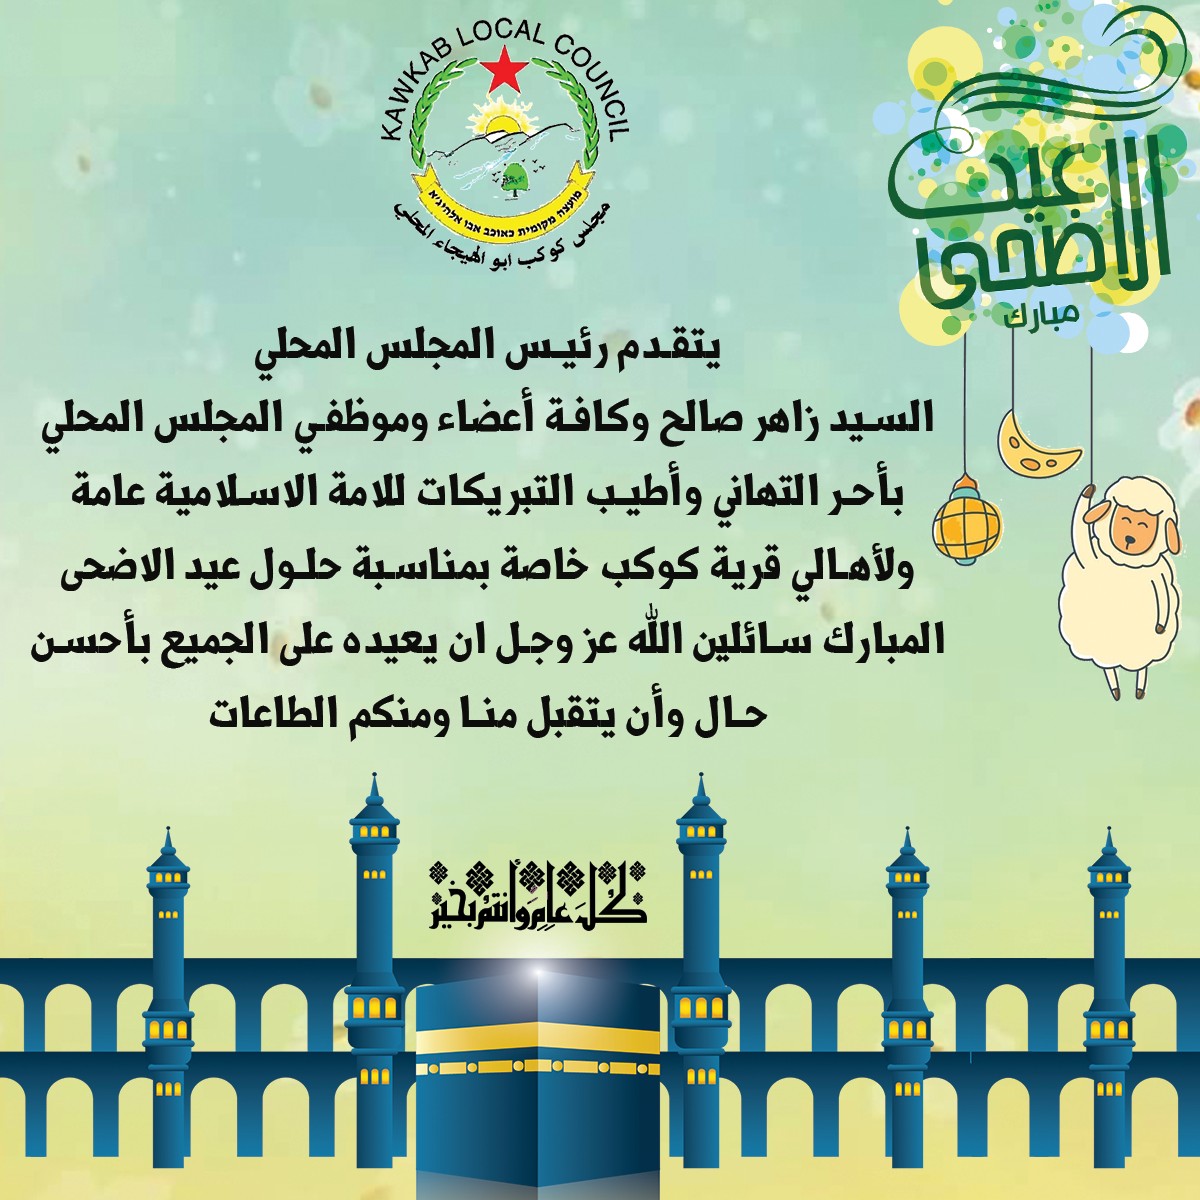 مجلس محلي كوكب ابو الهيجاء المحلي يهنىء بحلول عيد الأضحى المبارك